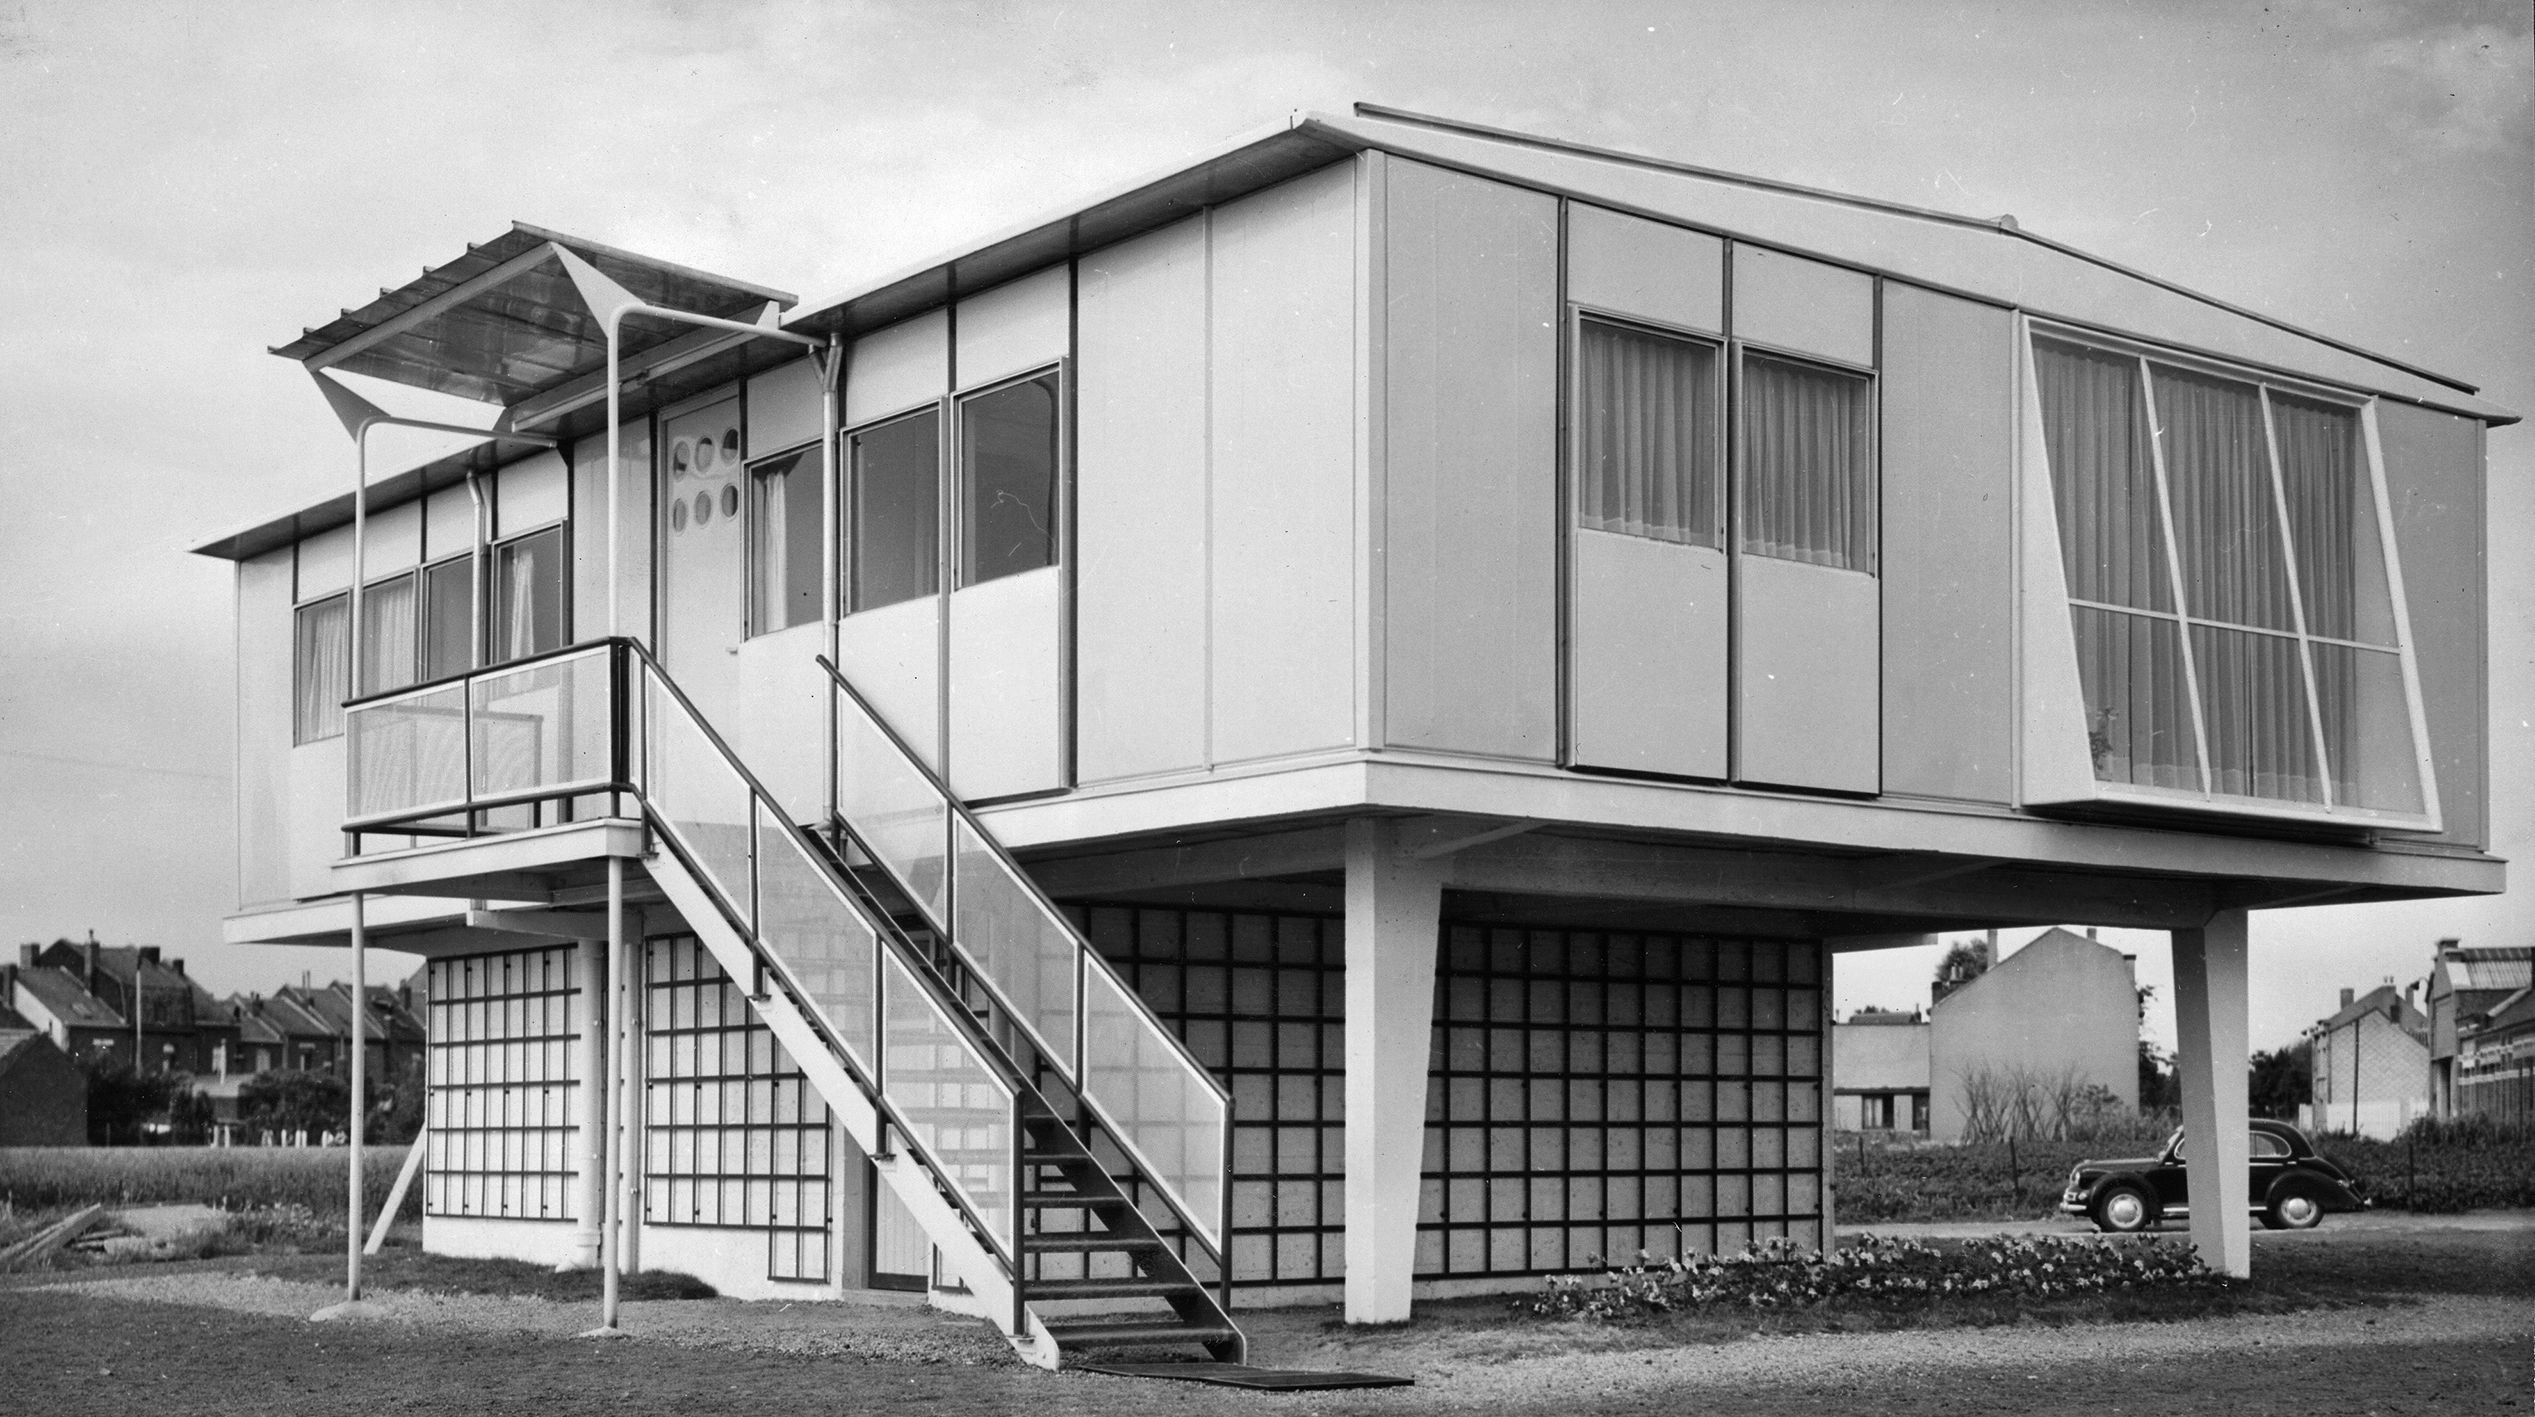 Métropole demountable house. Raised 8x12 house, Tourcoing, ca. 1951.